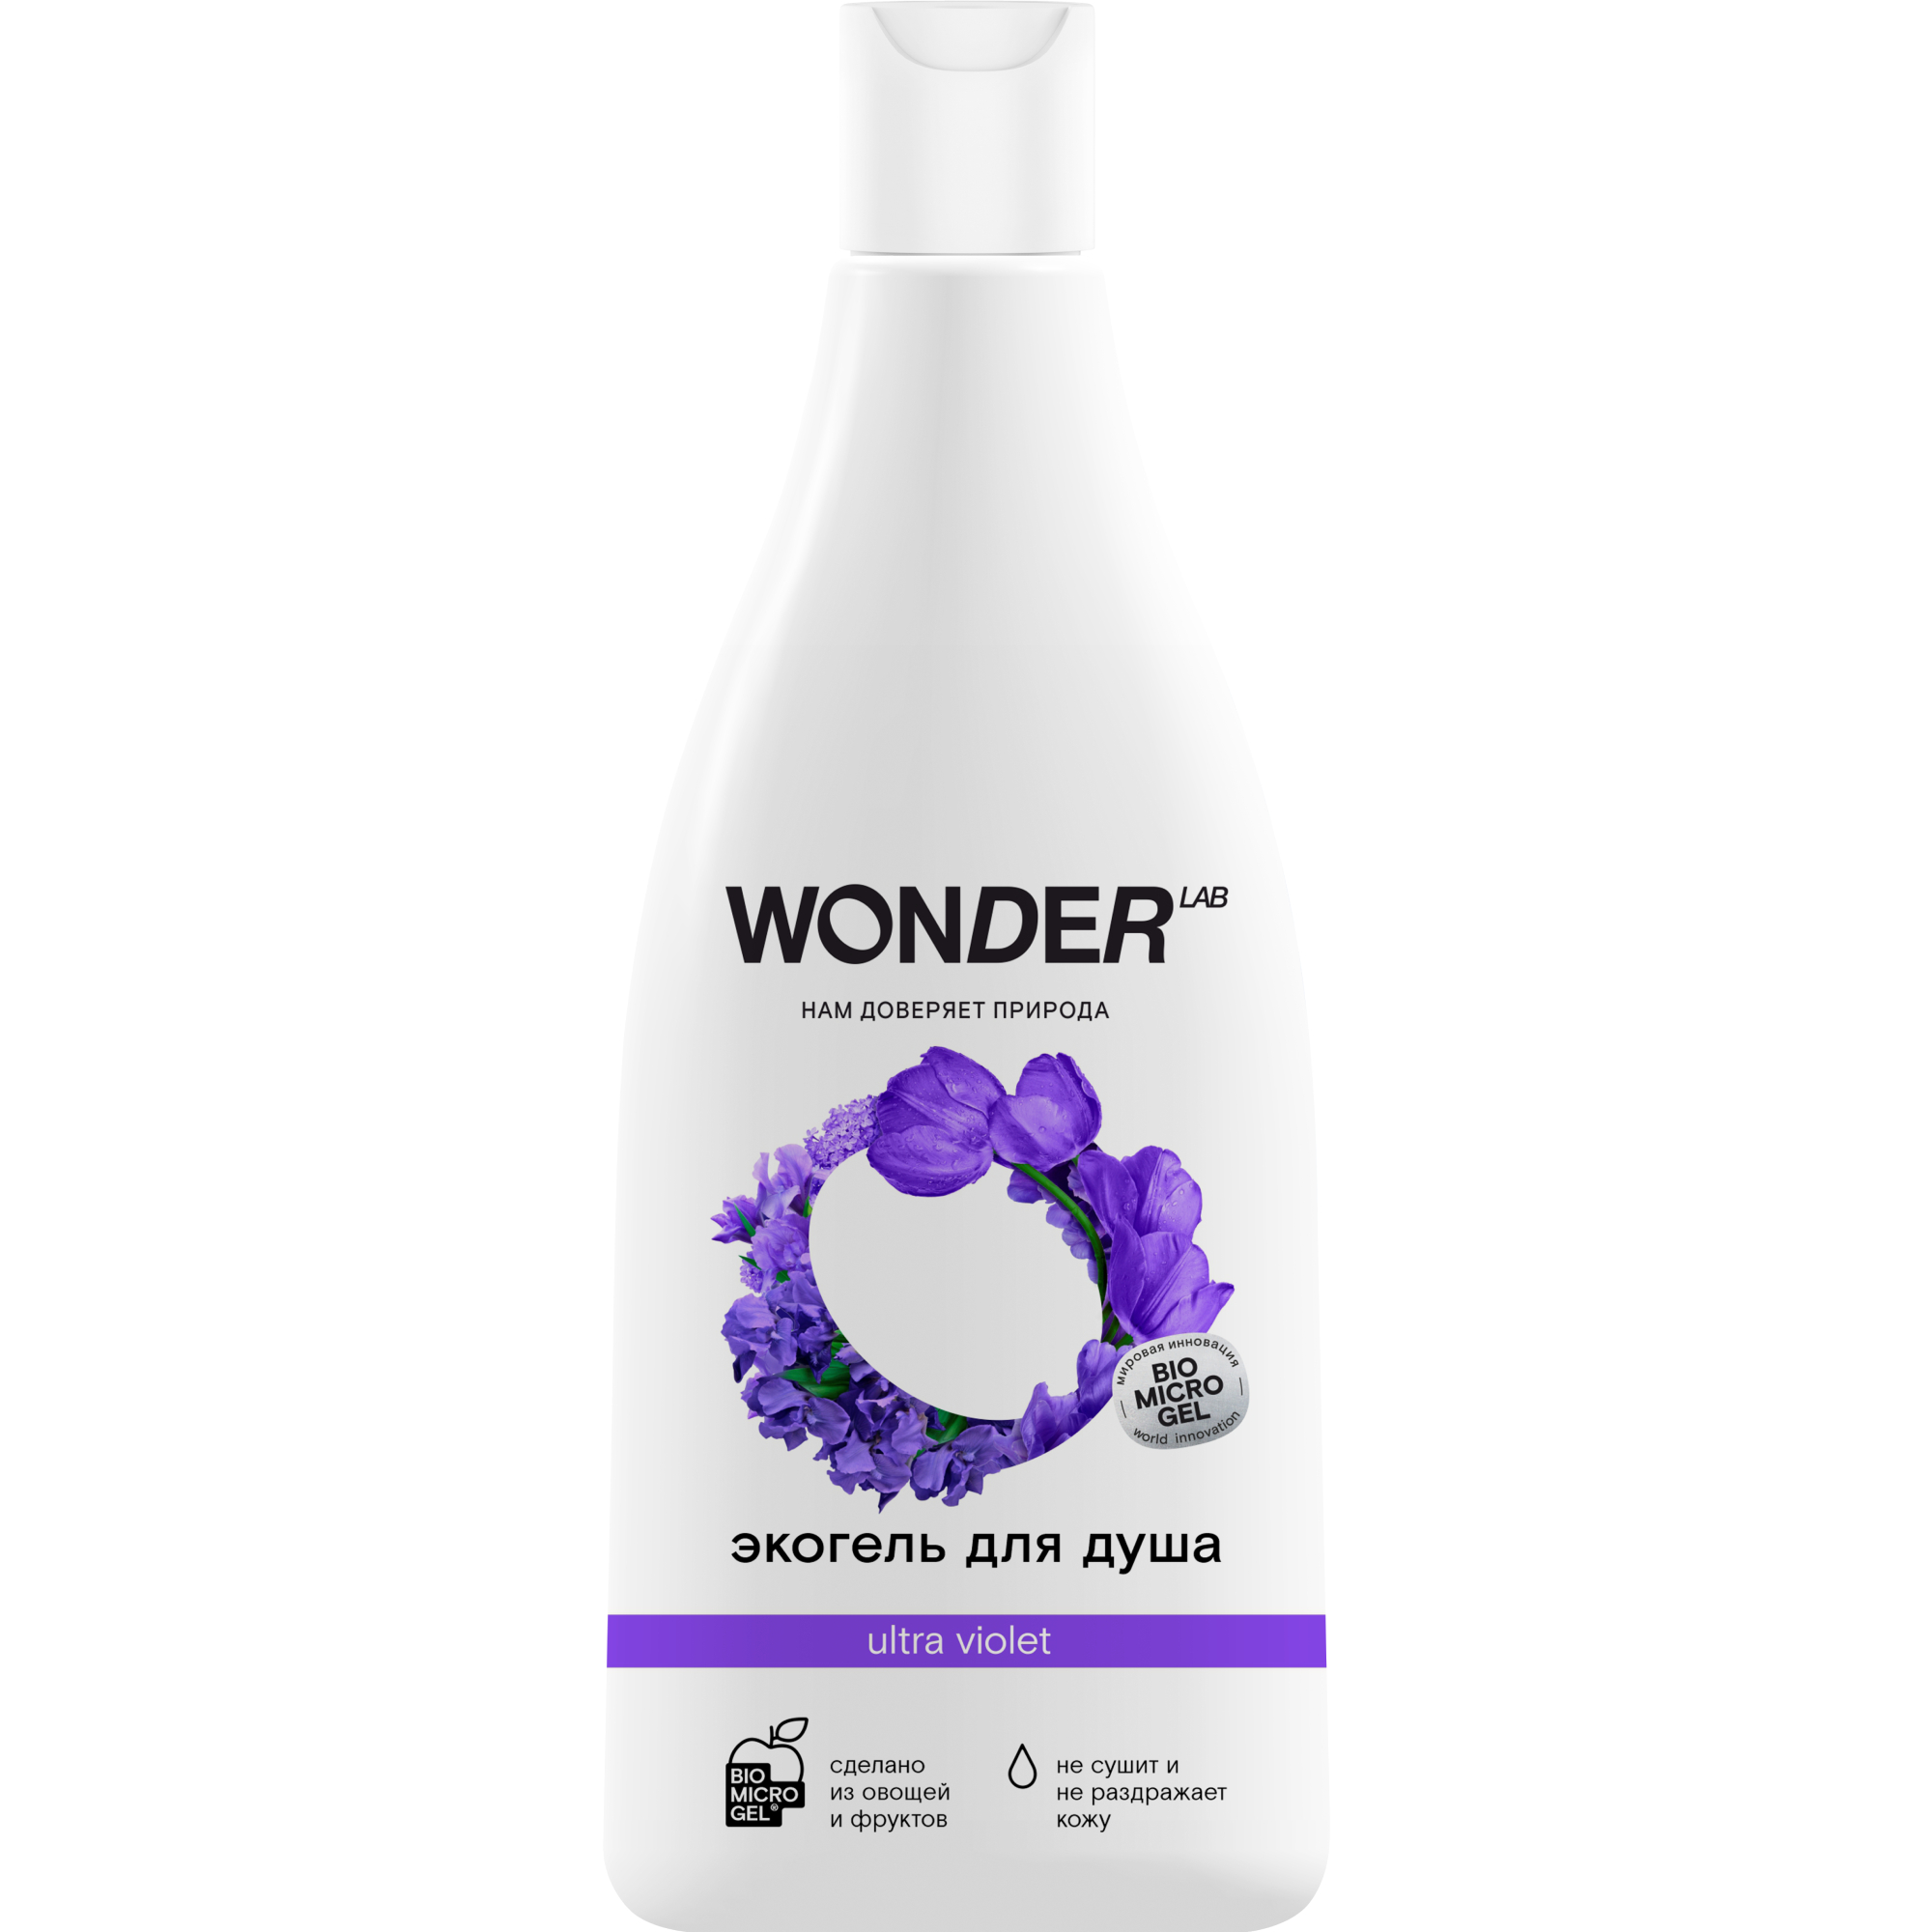 Гель для душа WONDER LAB ultra violet увлажняющий Полевые цветы 550 мл wonder lab эко гель для мытья посуды яблочный 1000